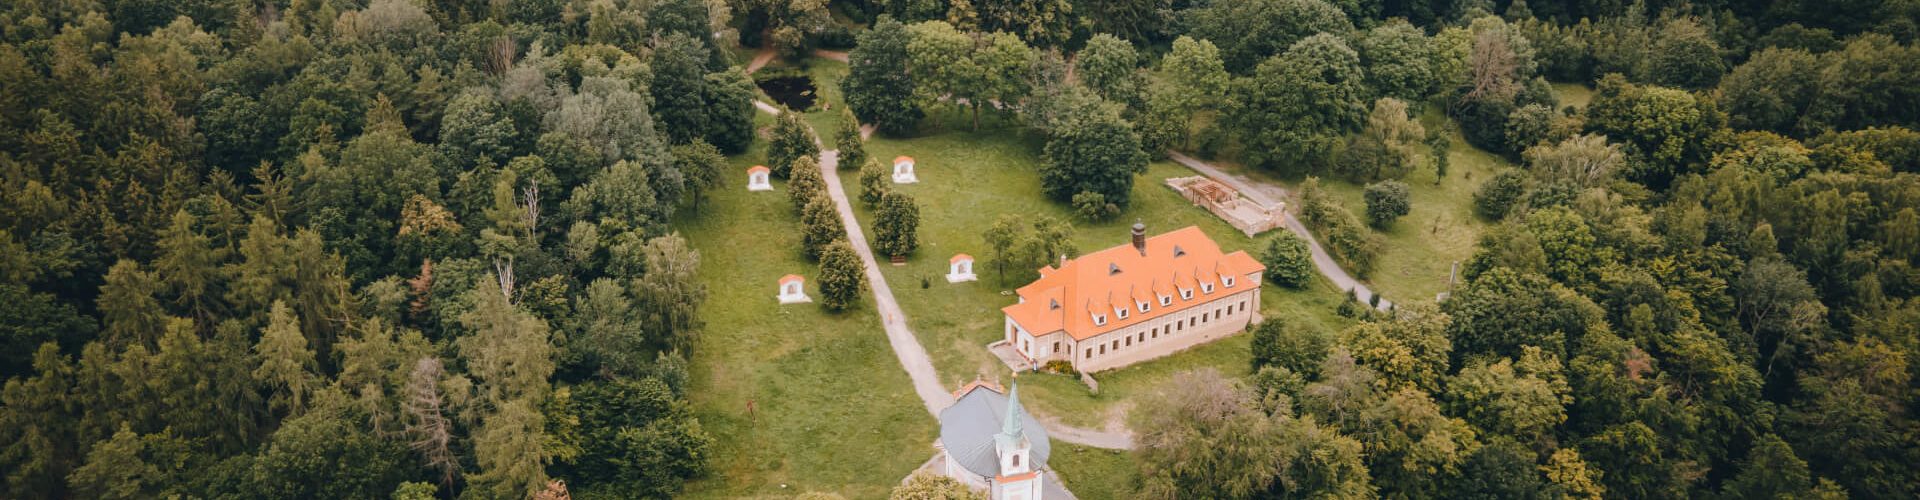 Skalka Pilgrimage Site near Mníšek pod Brdy